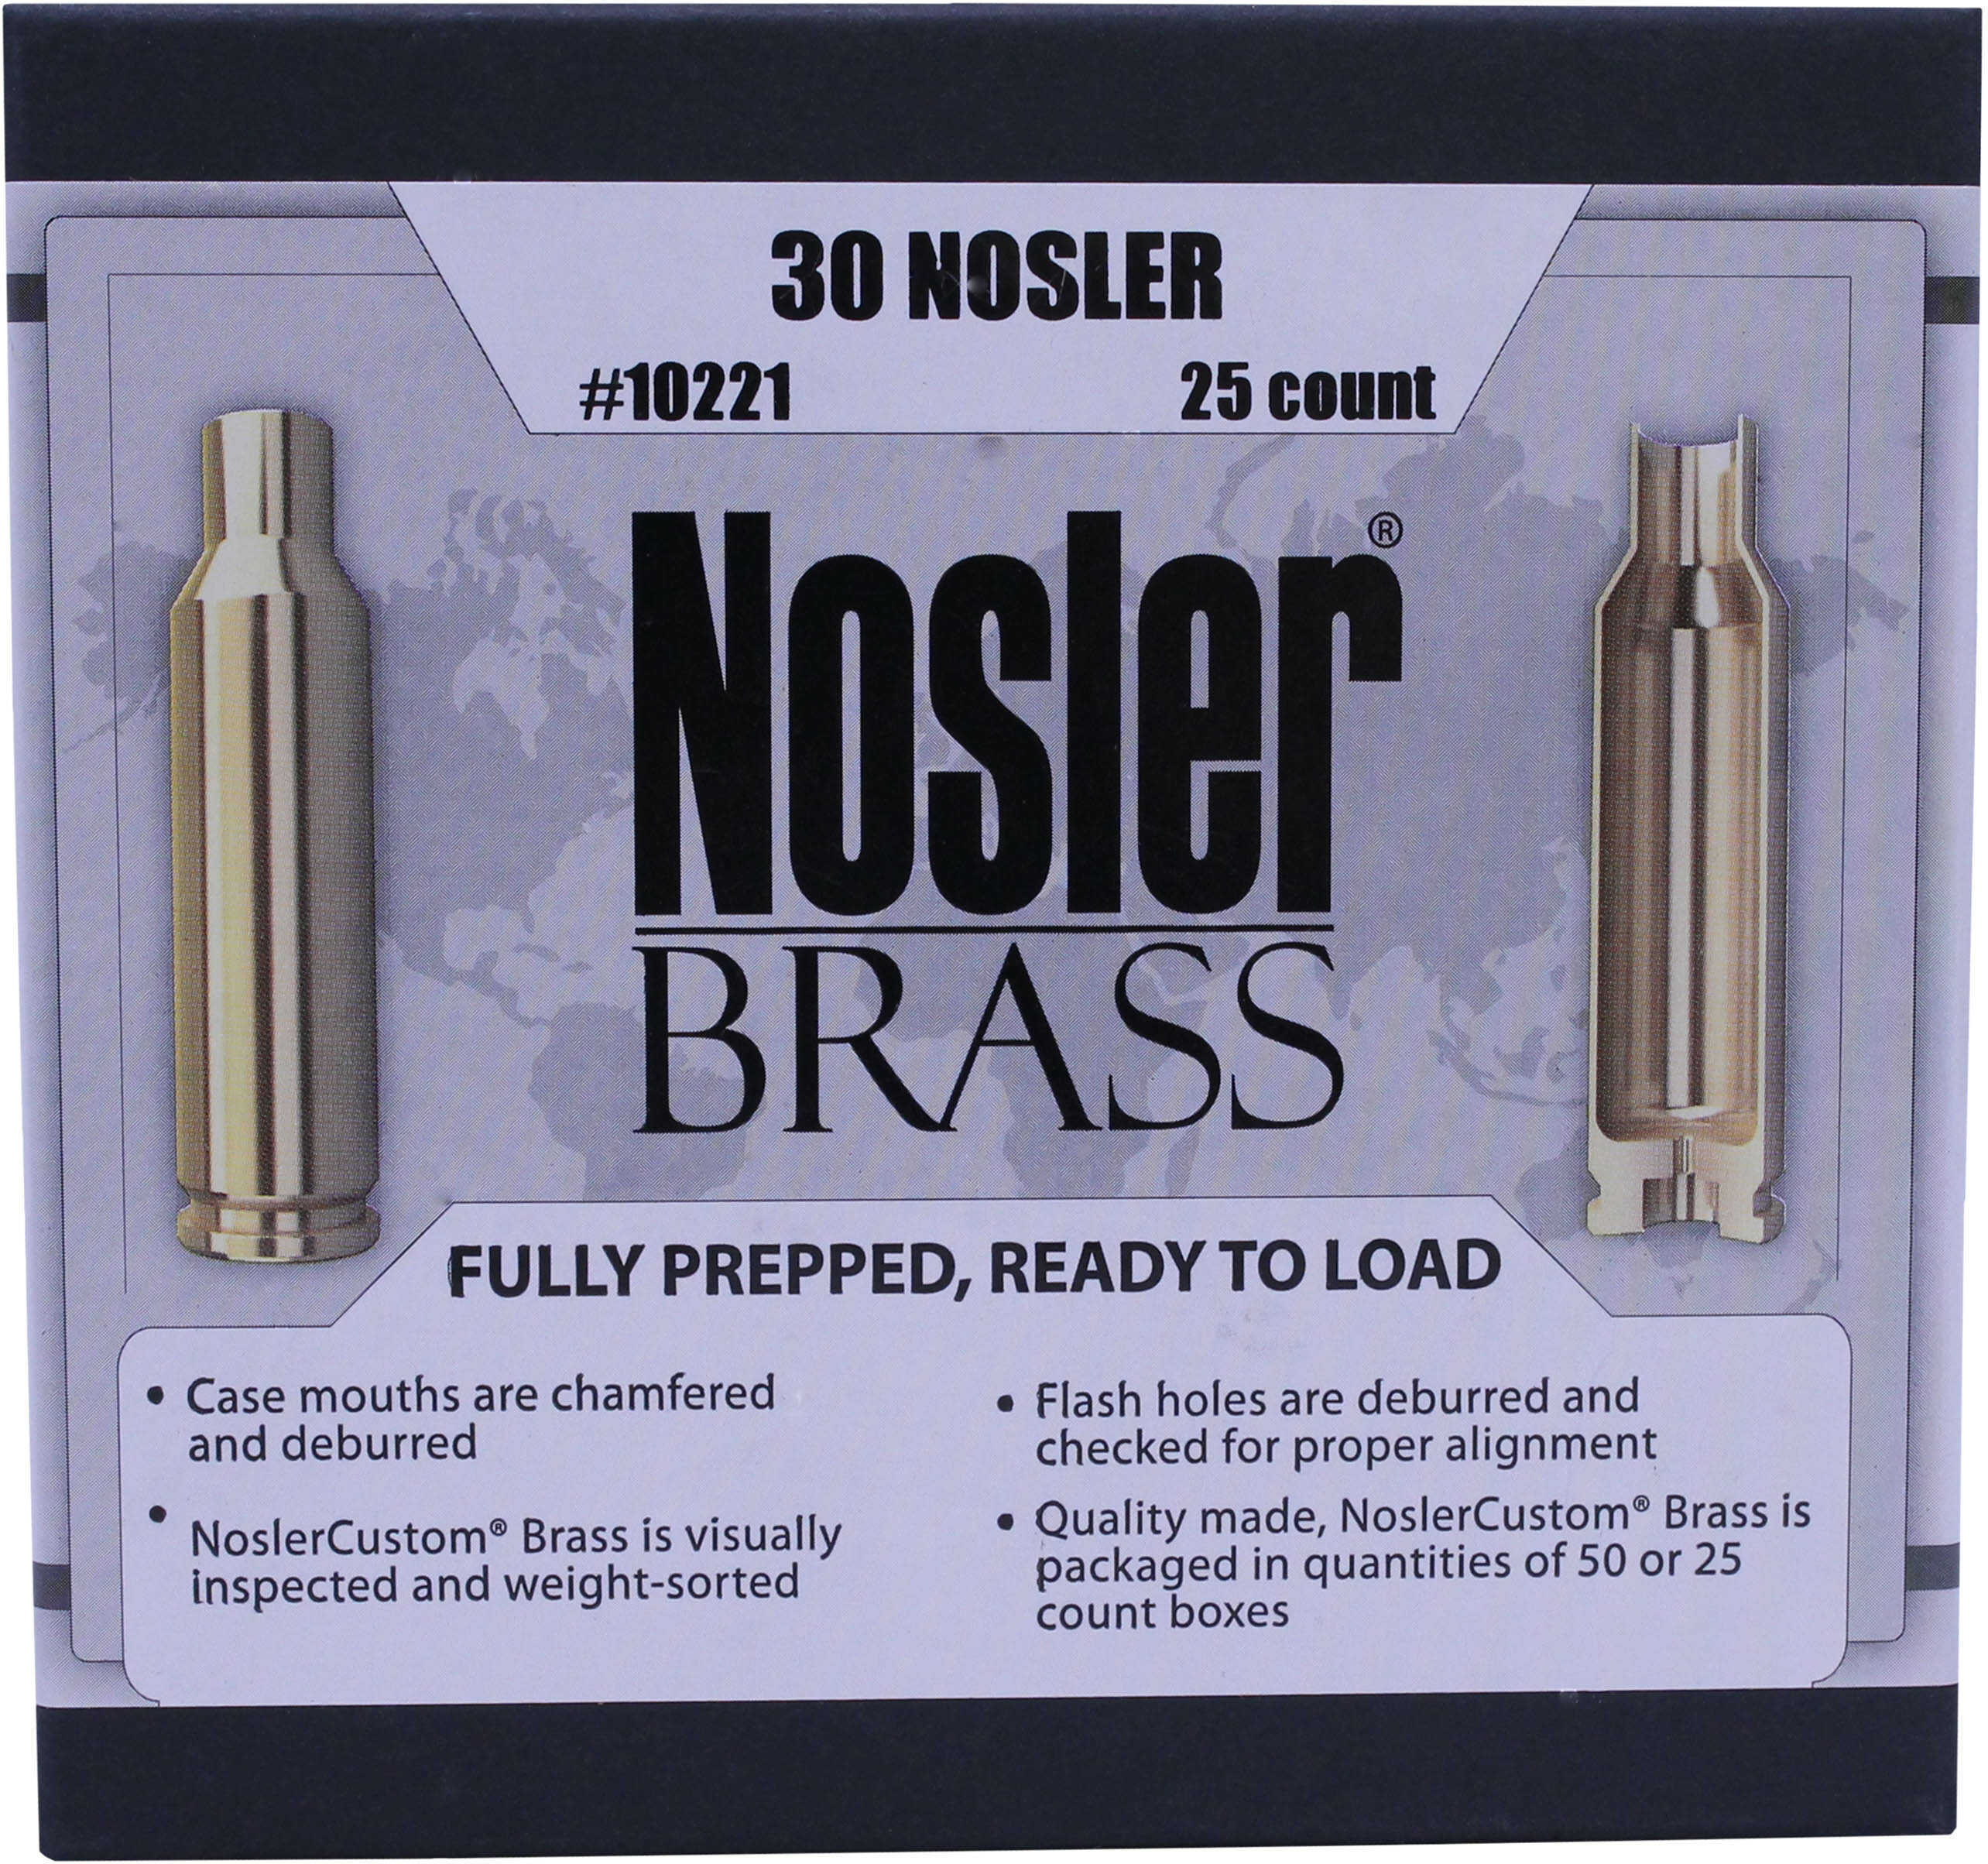 Custom Reloading Brass 30 Nosler, Pack Of 25 Md: 10221